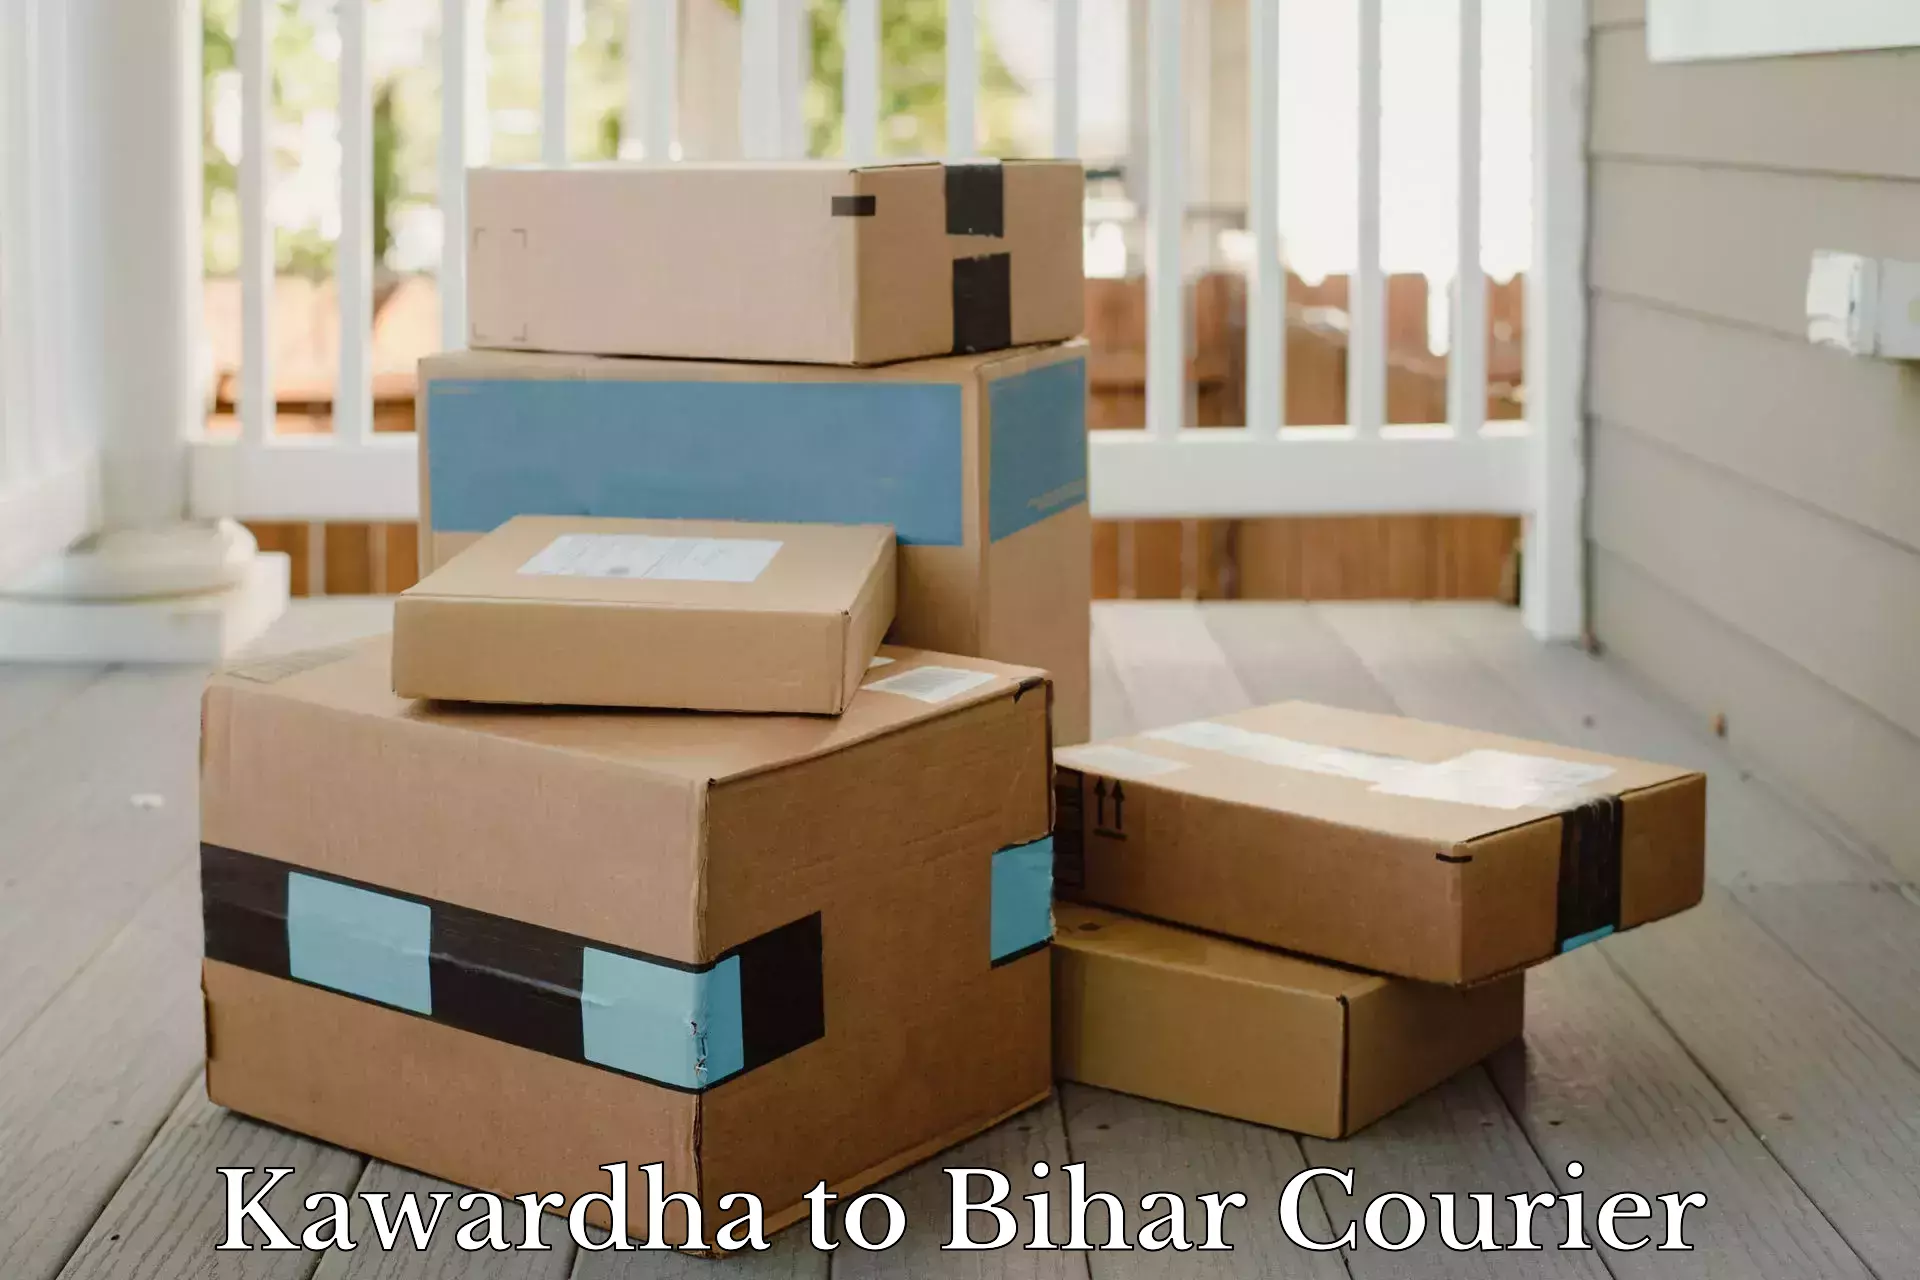 Enhanced delivery experience Kawardha to Khizarsarai